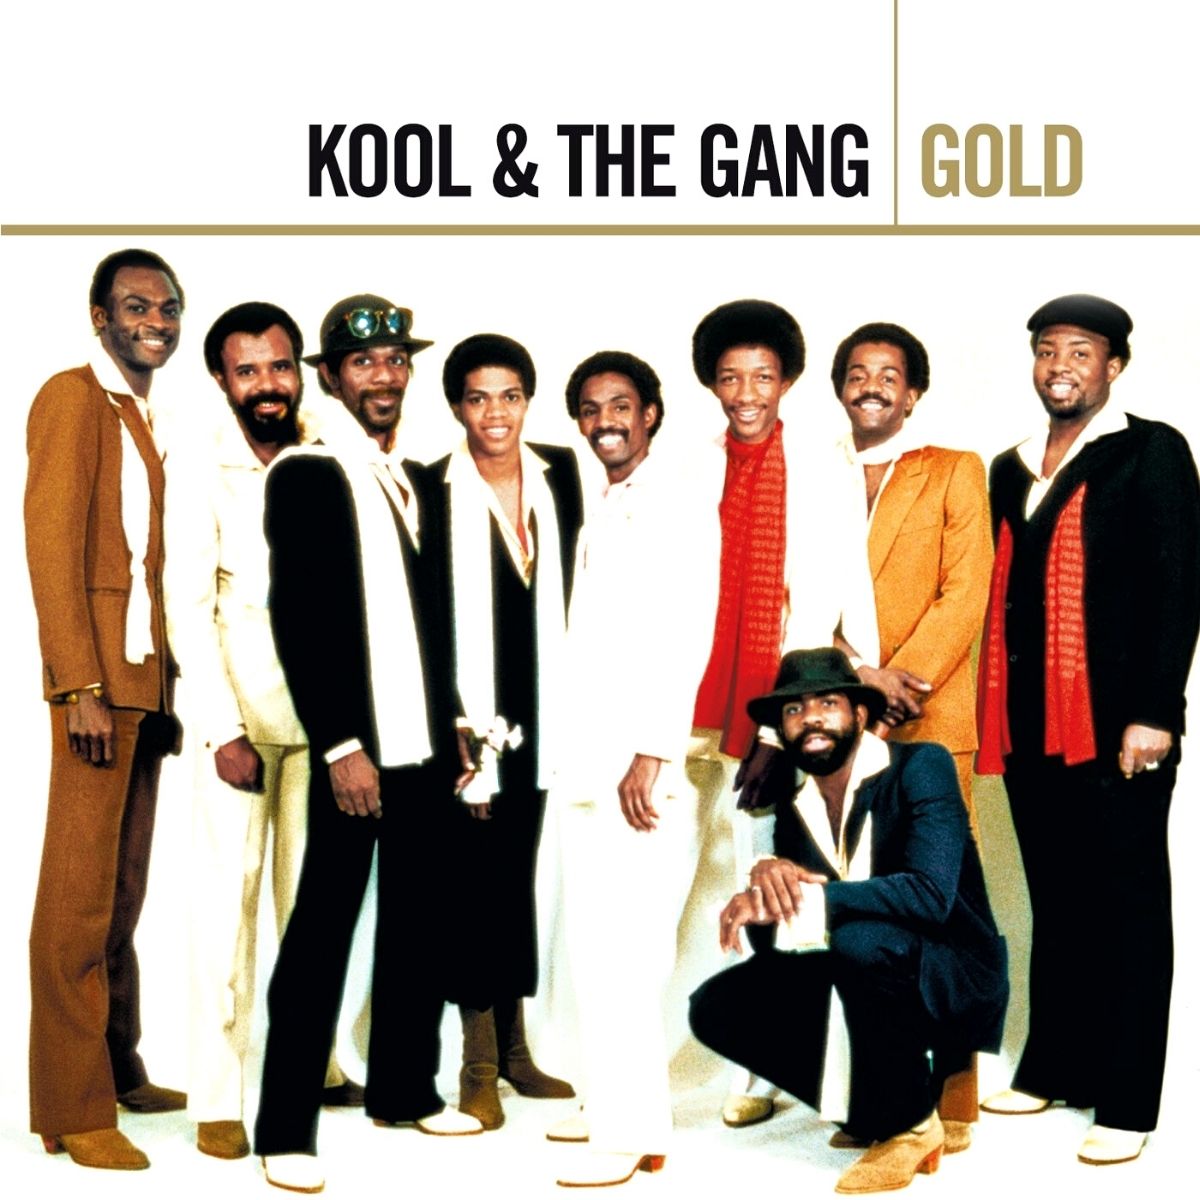 Kool & The Gang 在他們的專輯封面上